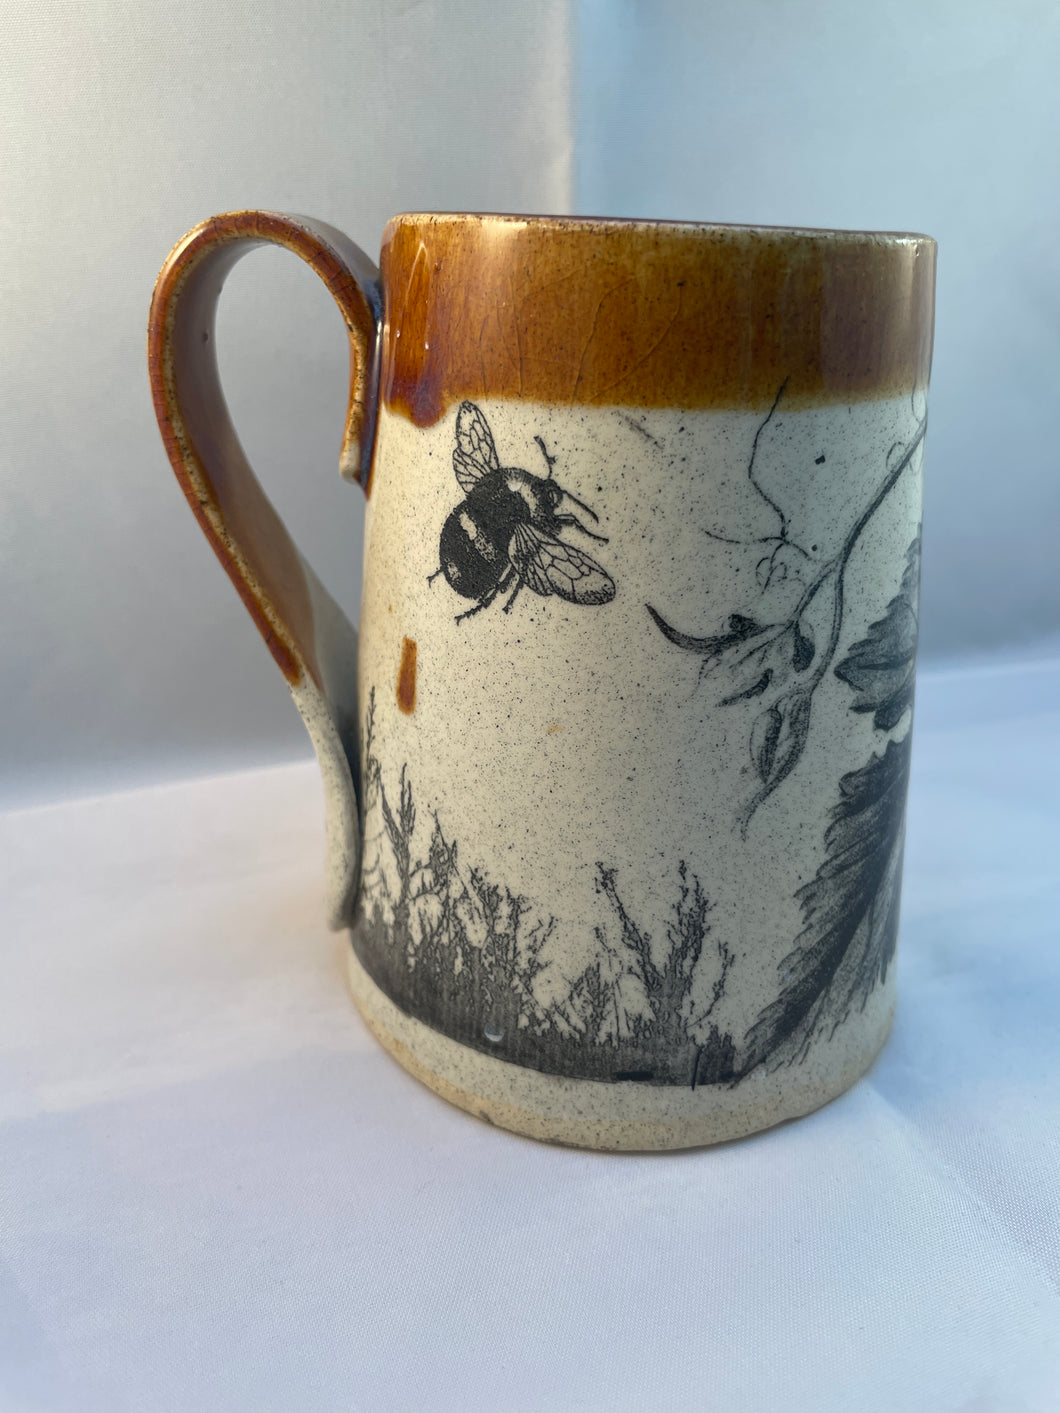 Squash, Bumblebee, and Grasshopper ArtPrize Mug - floating orange